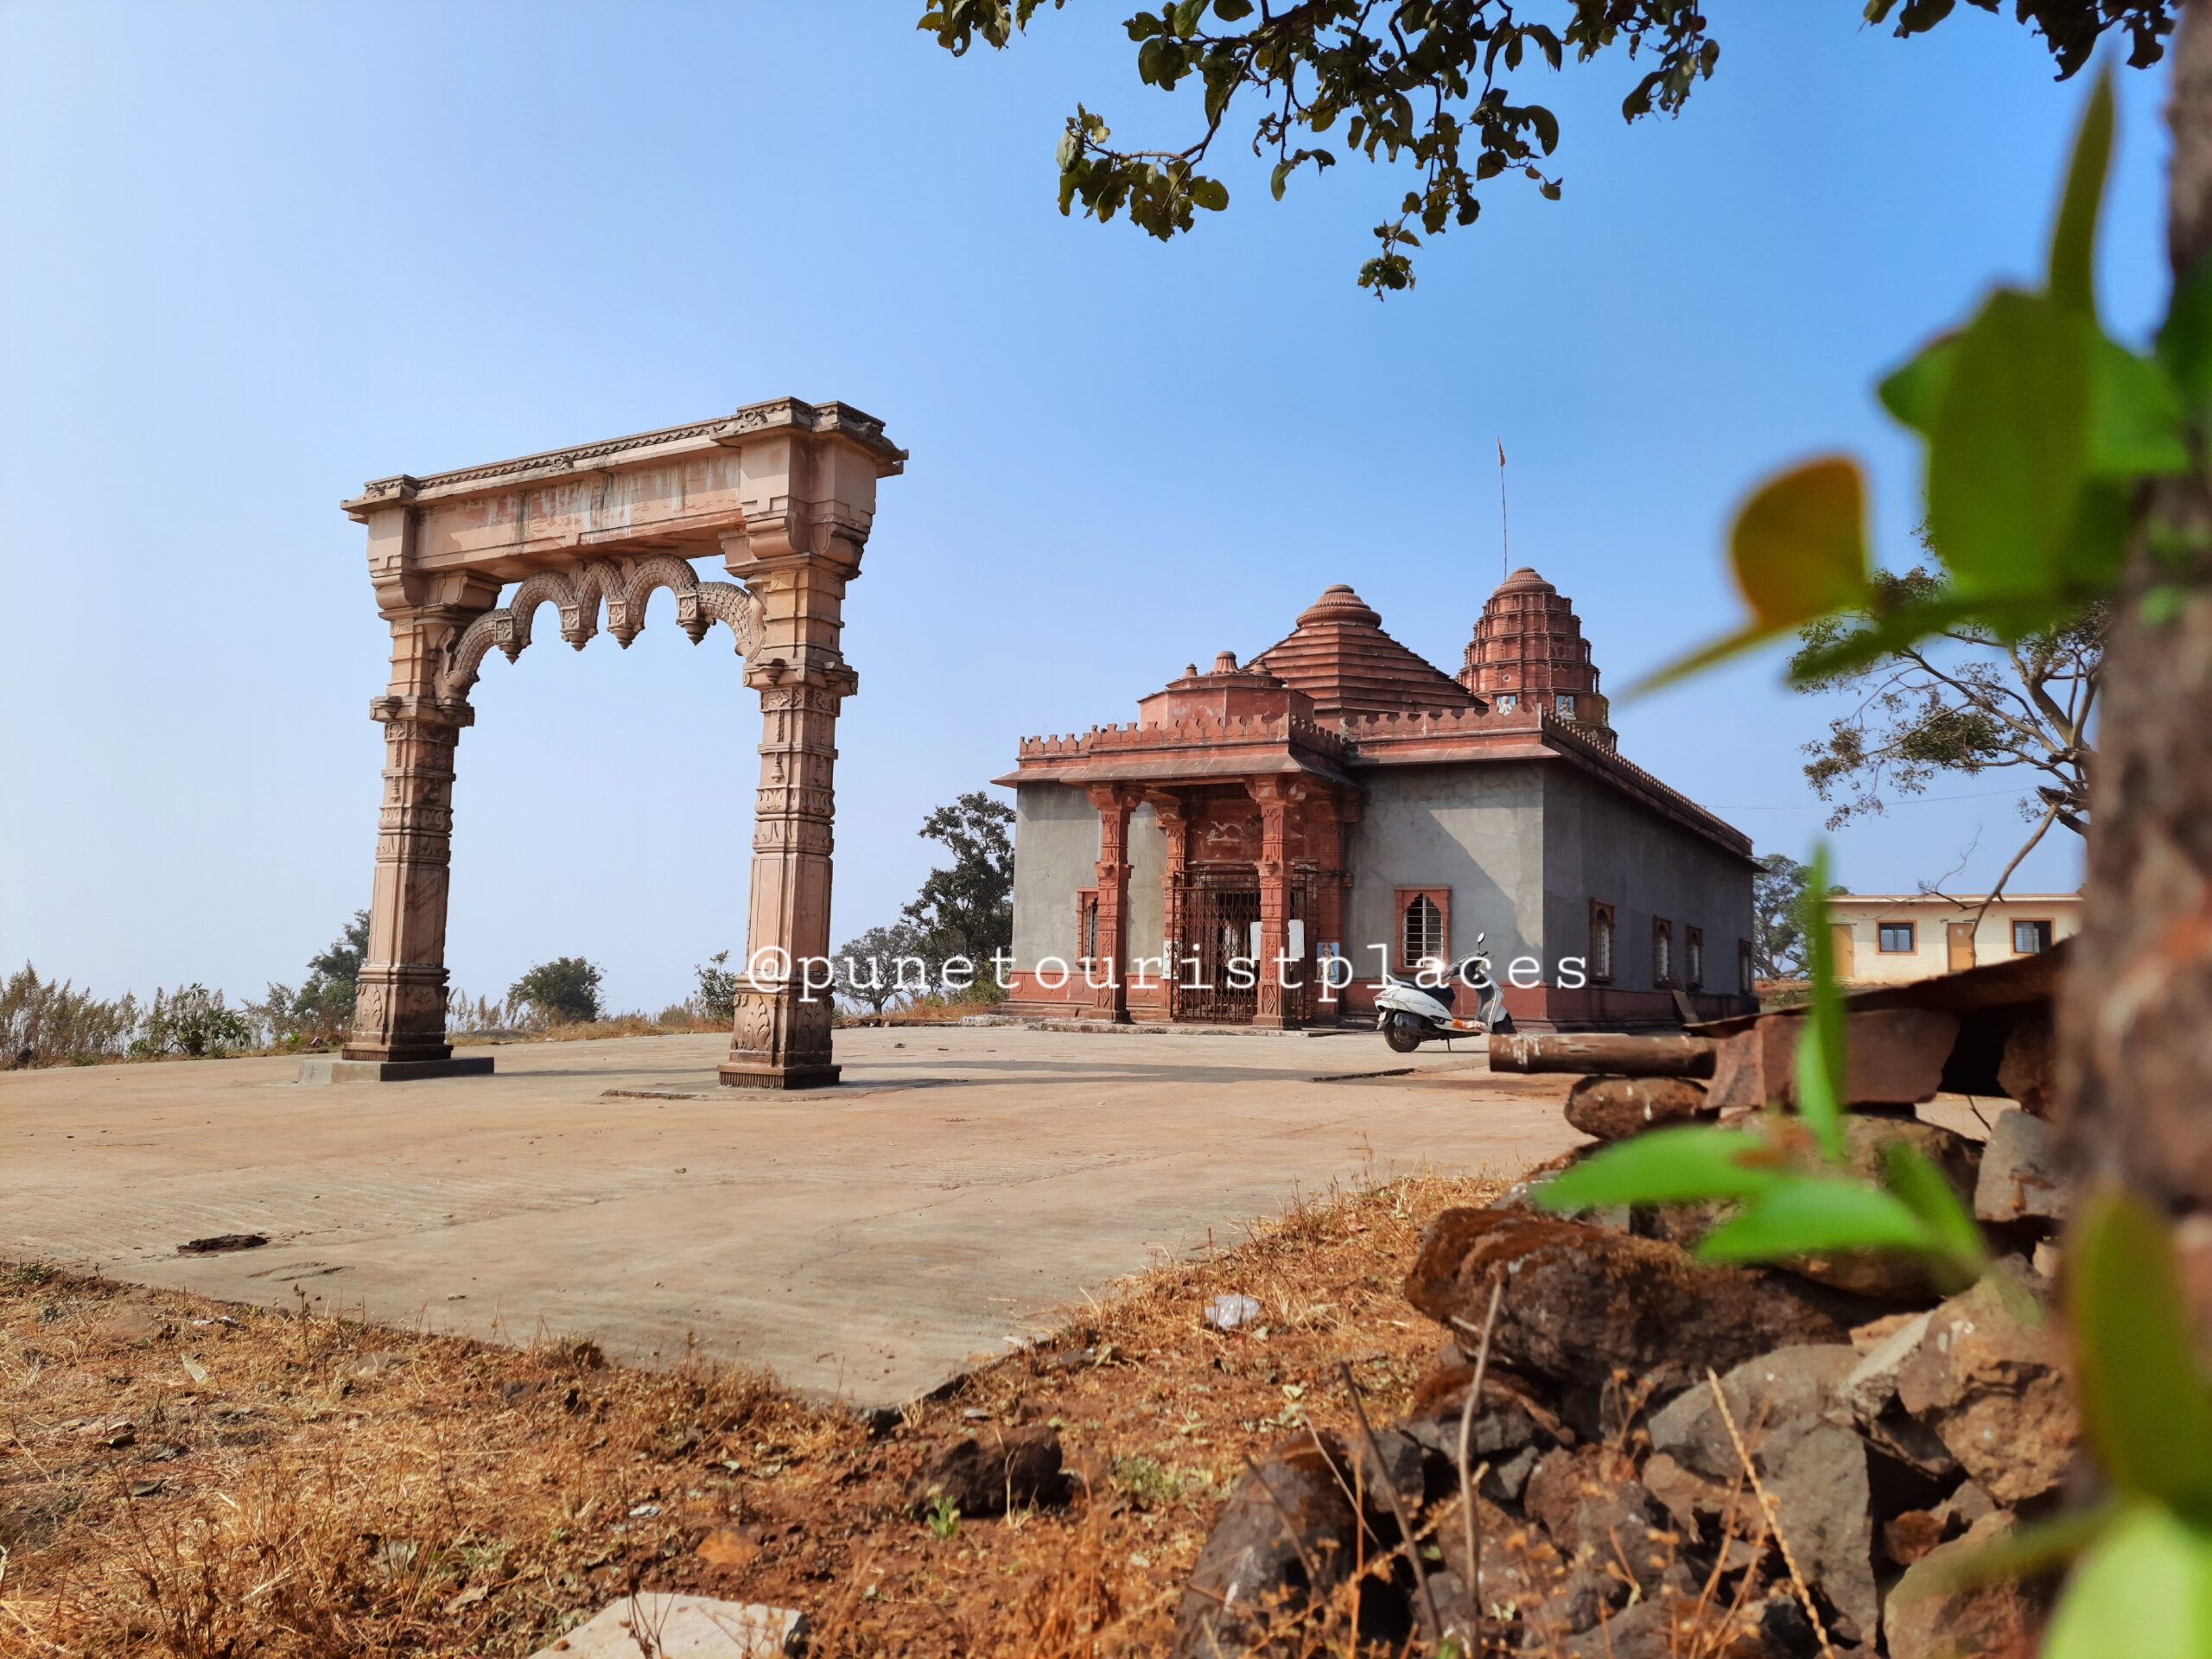 Jarshehswar Temple - Pune Tourist Places